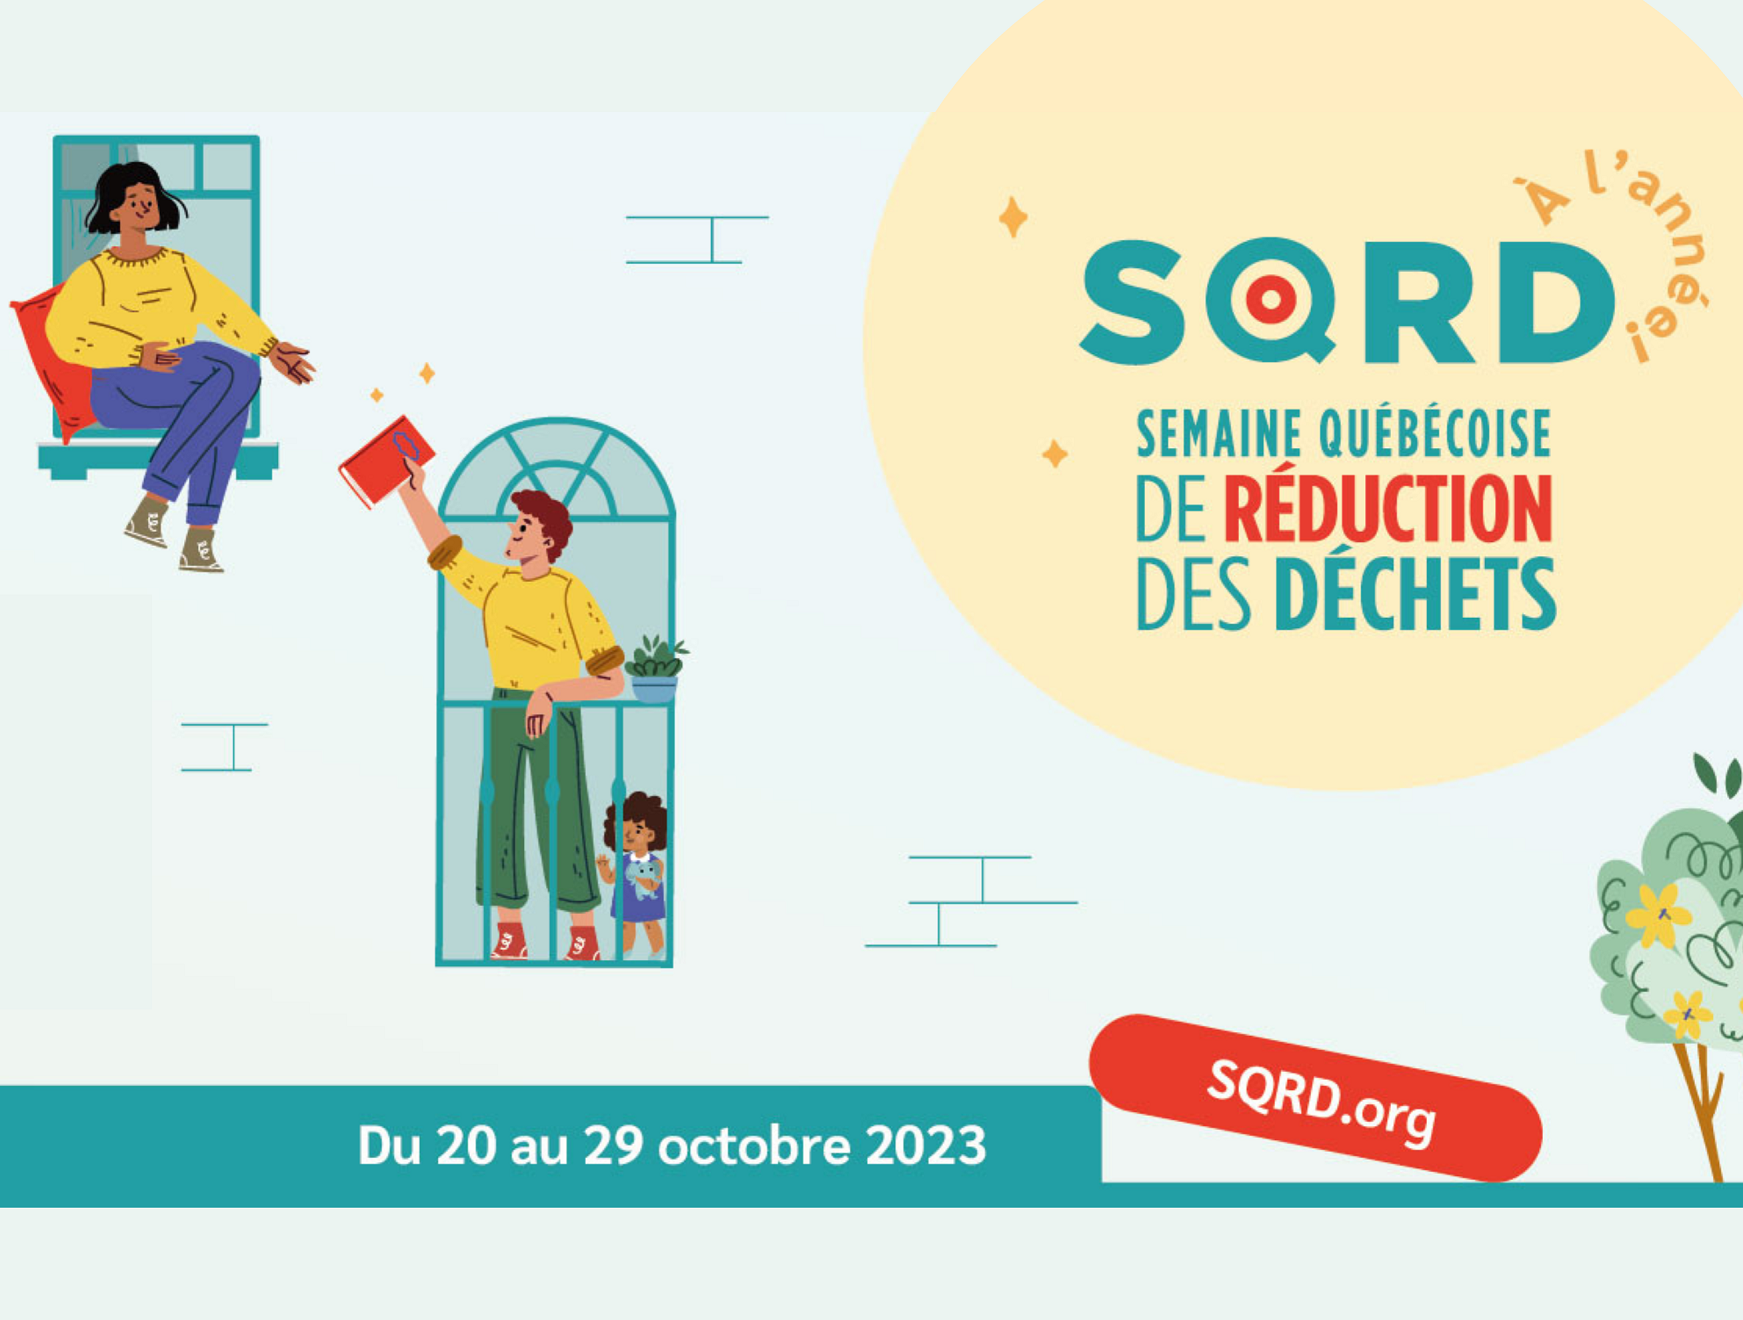 Le CREBSL invite la population à participer activement à la Semaine québécoise de réduction des déchets 2023